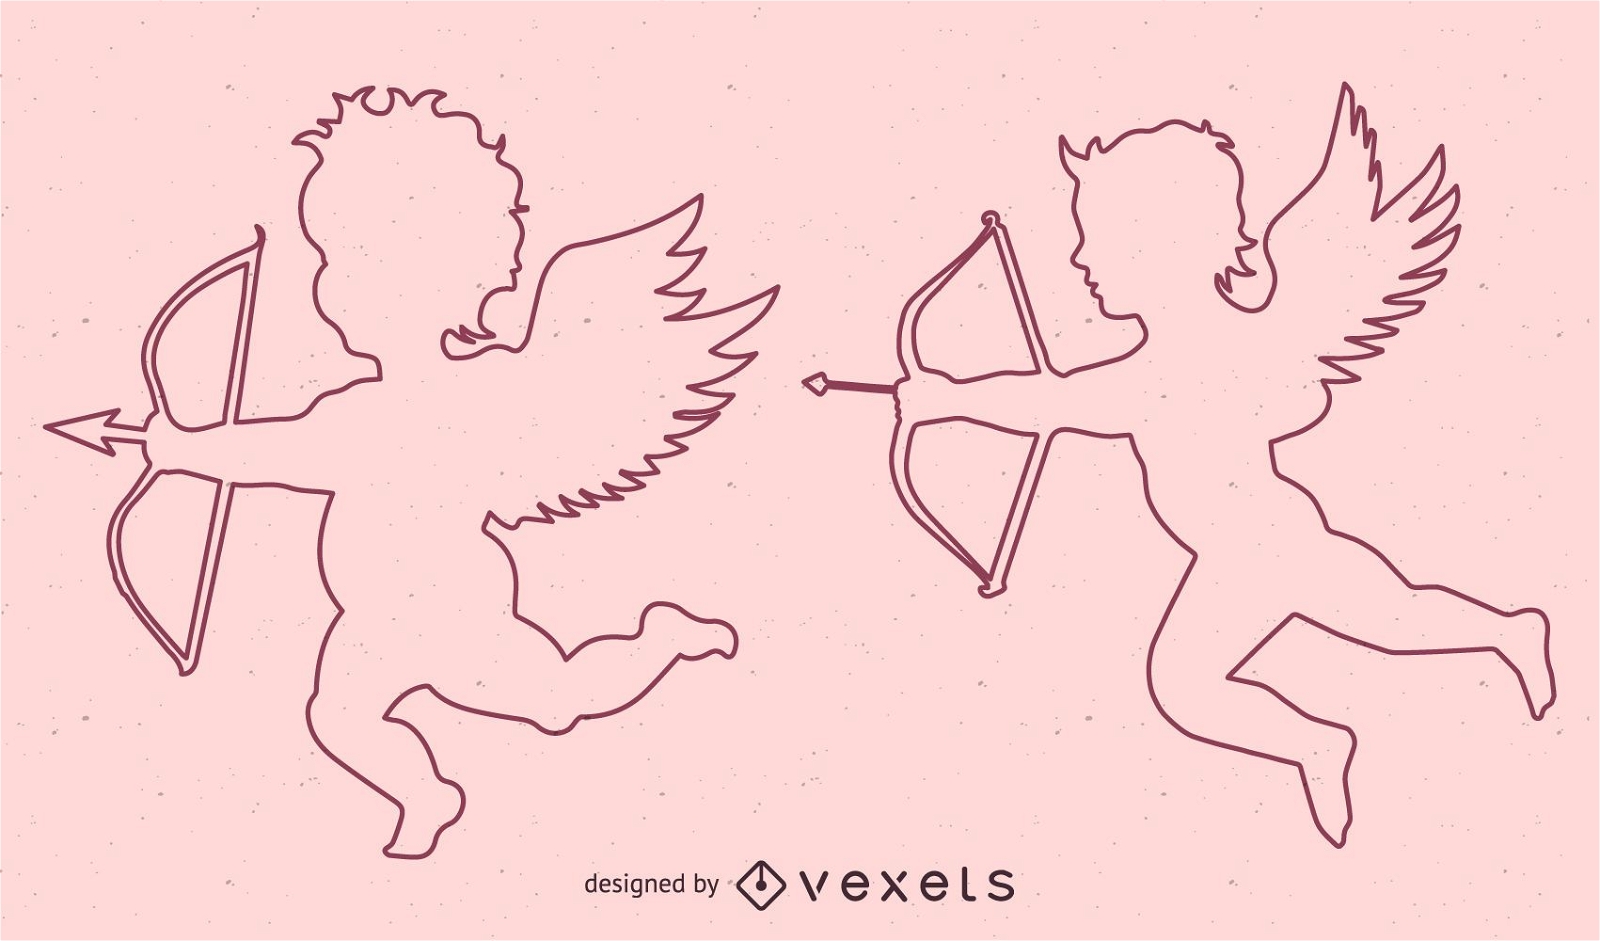 Dibujo lineal del vector de Cupido